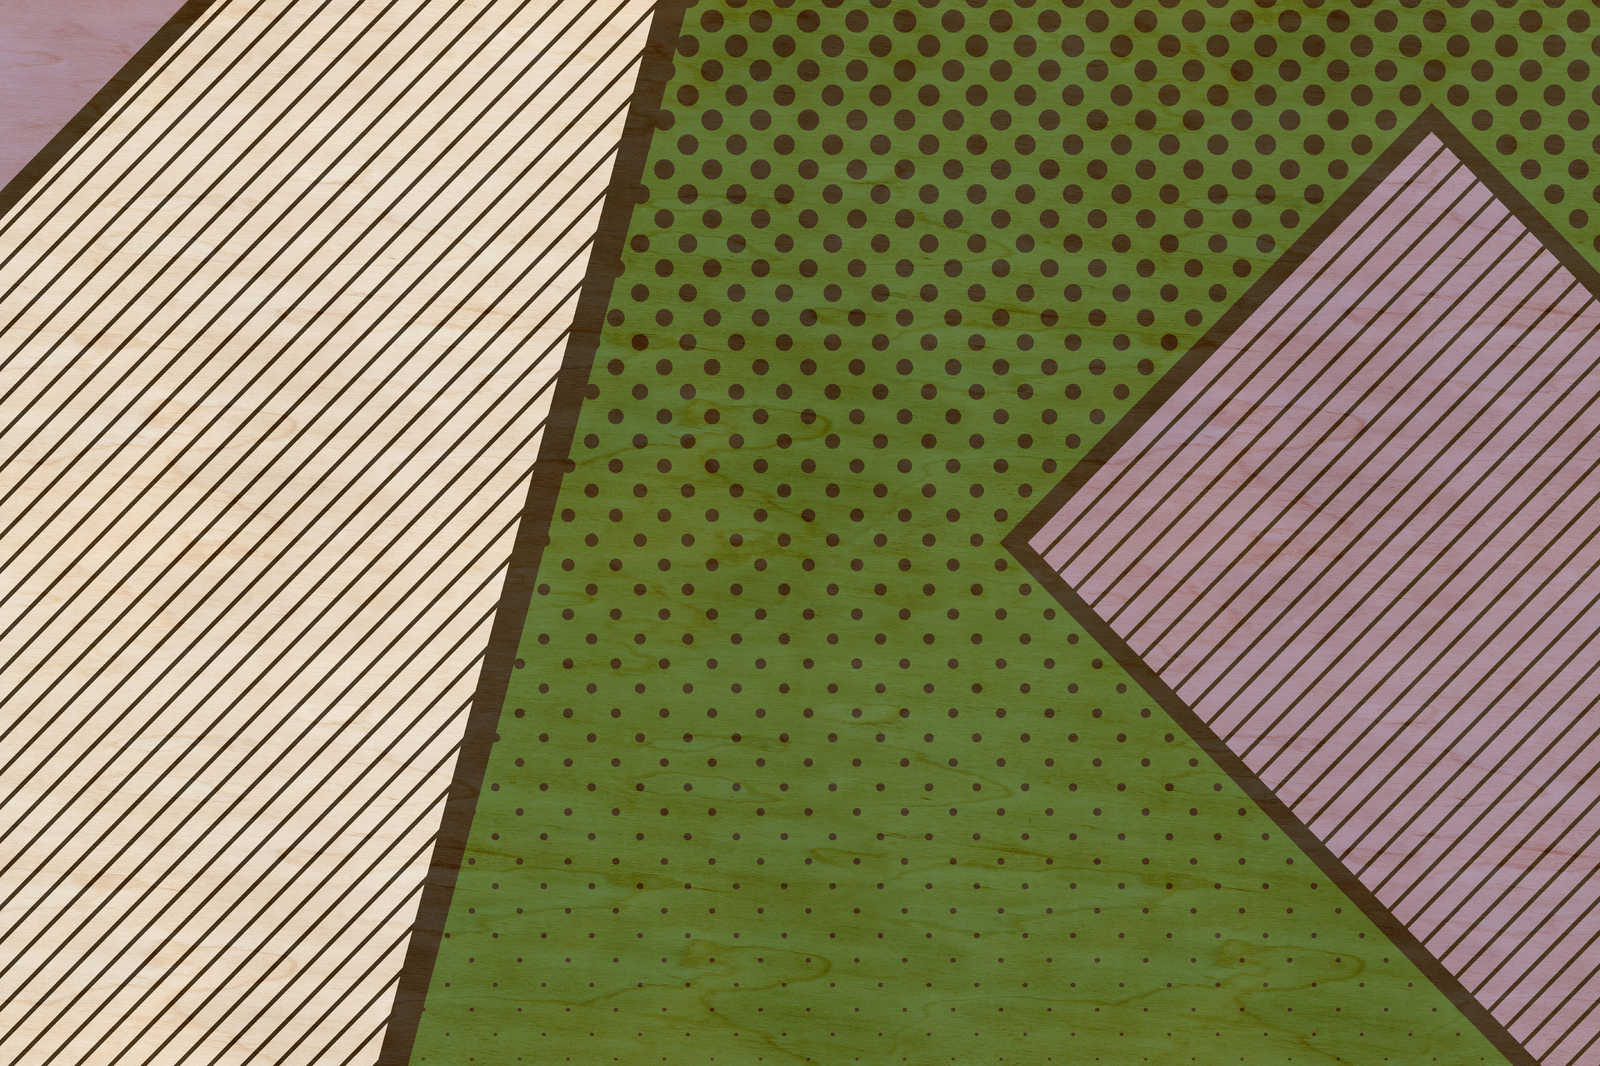             Bird gang 3 - Toile abstraite en structure contreplaquée avec aplats de couleurs vives - 0,90 m x 0,60 m
        